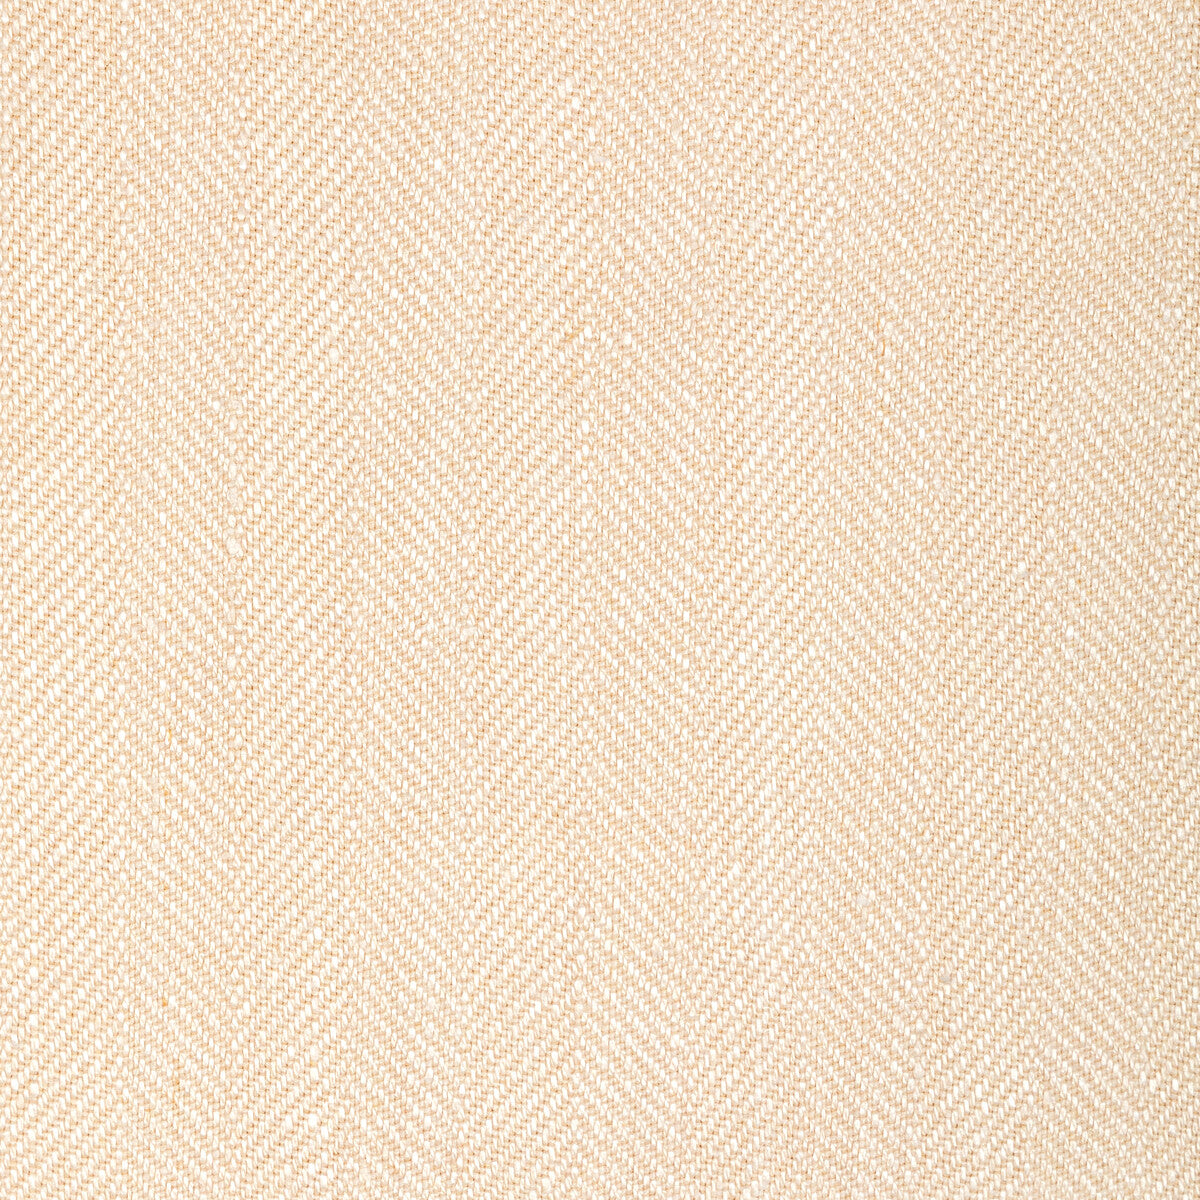 Kravet Basics fabric in 36343-106 color - pattern 36343.106.0 - by Kravet Basics